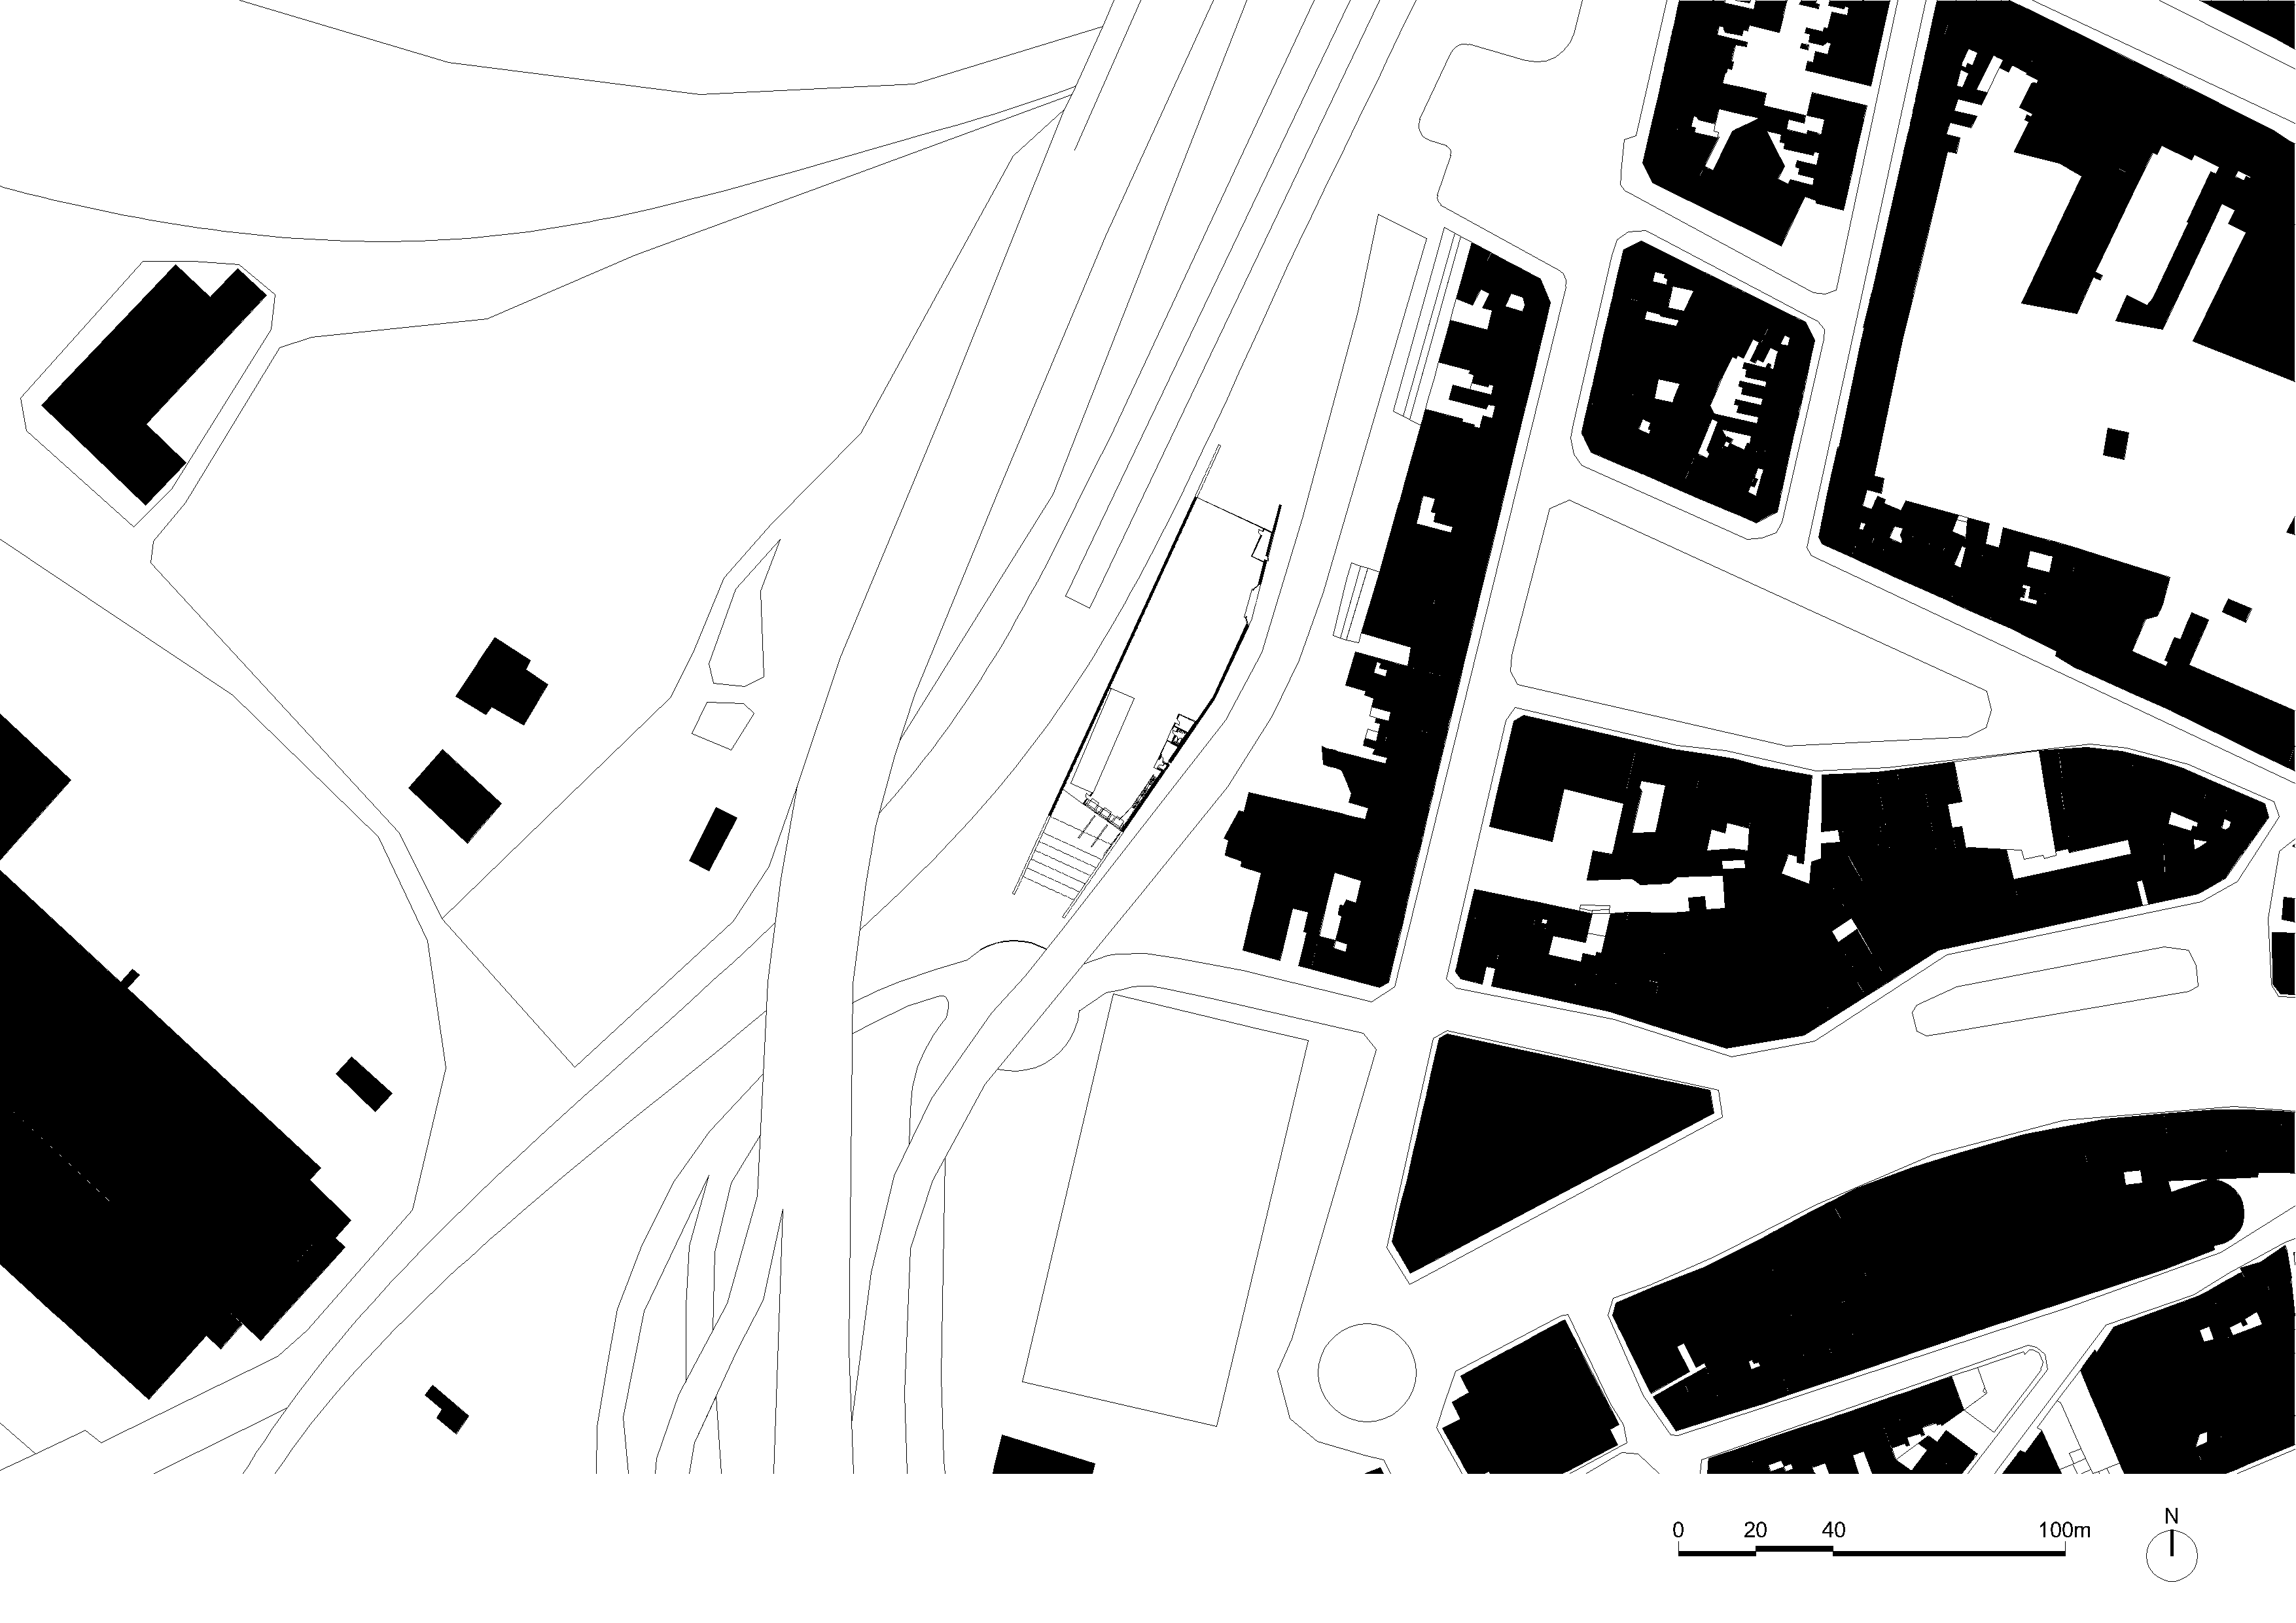 architecture-contemporaine-centre-distribution-urbaine-logistique-charleroi-reservoir-a-plan-implantation